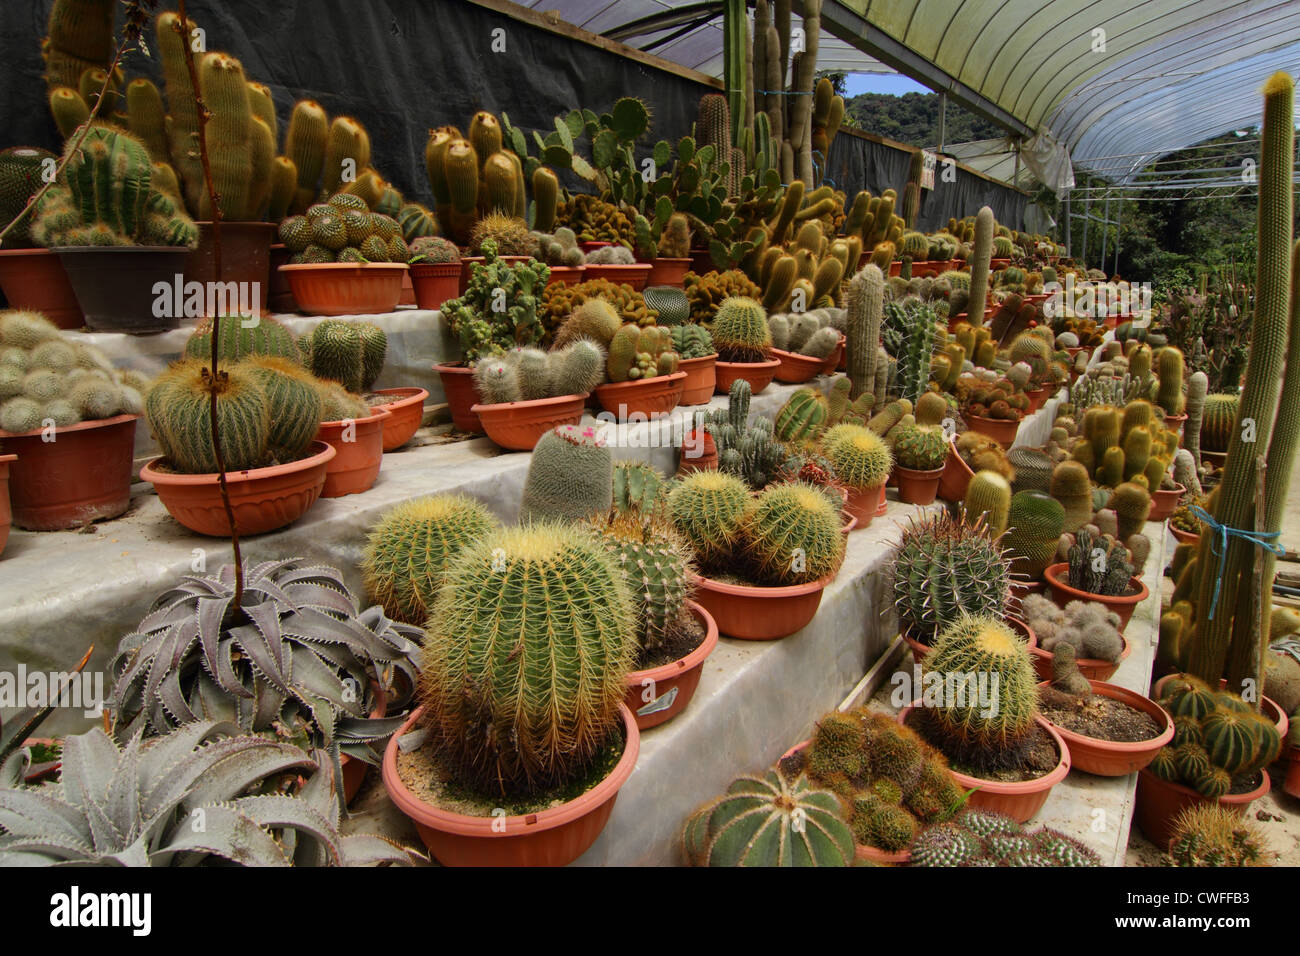 Eine Vielzahl von Kakteen auf dem Display an einer Kaktus-farm Stockfoto